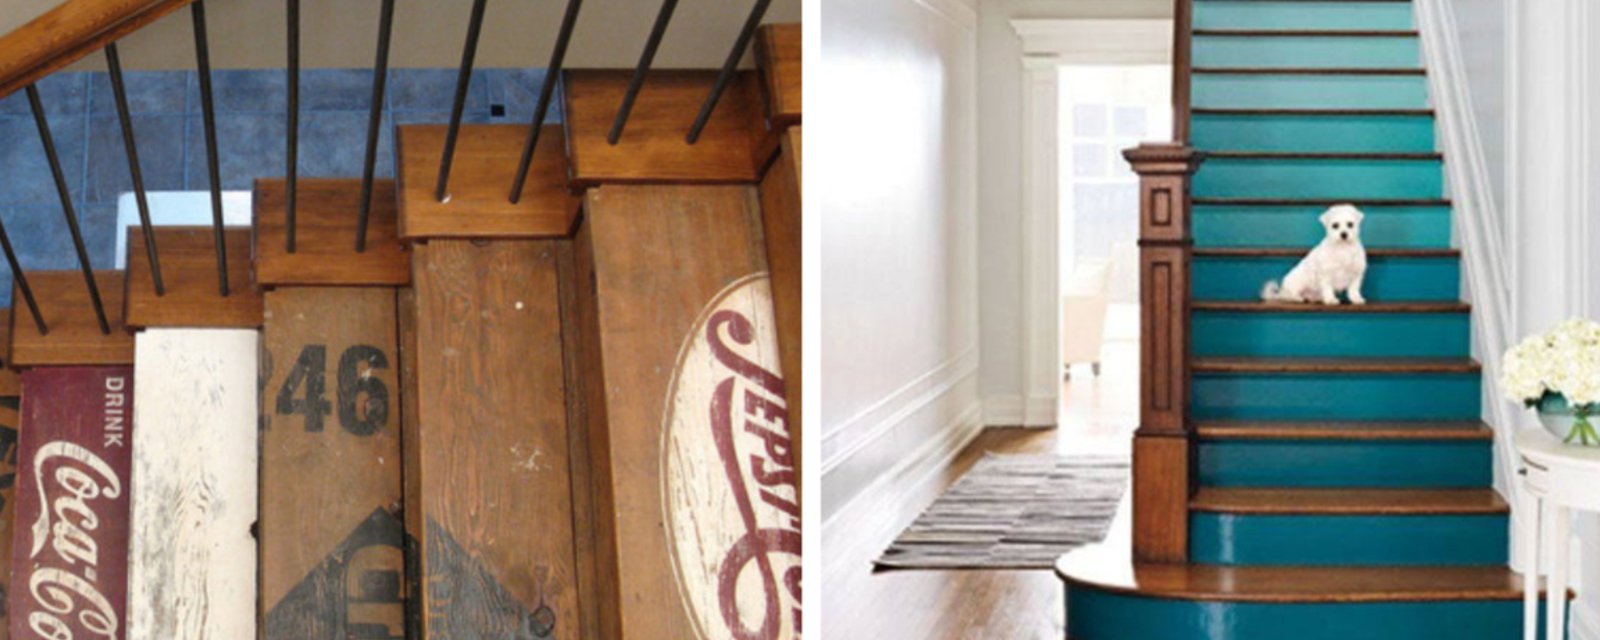 15 idées inspirantes pour décorer les escaliers avec originalité